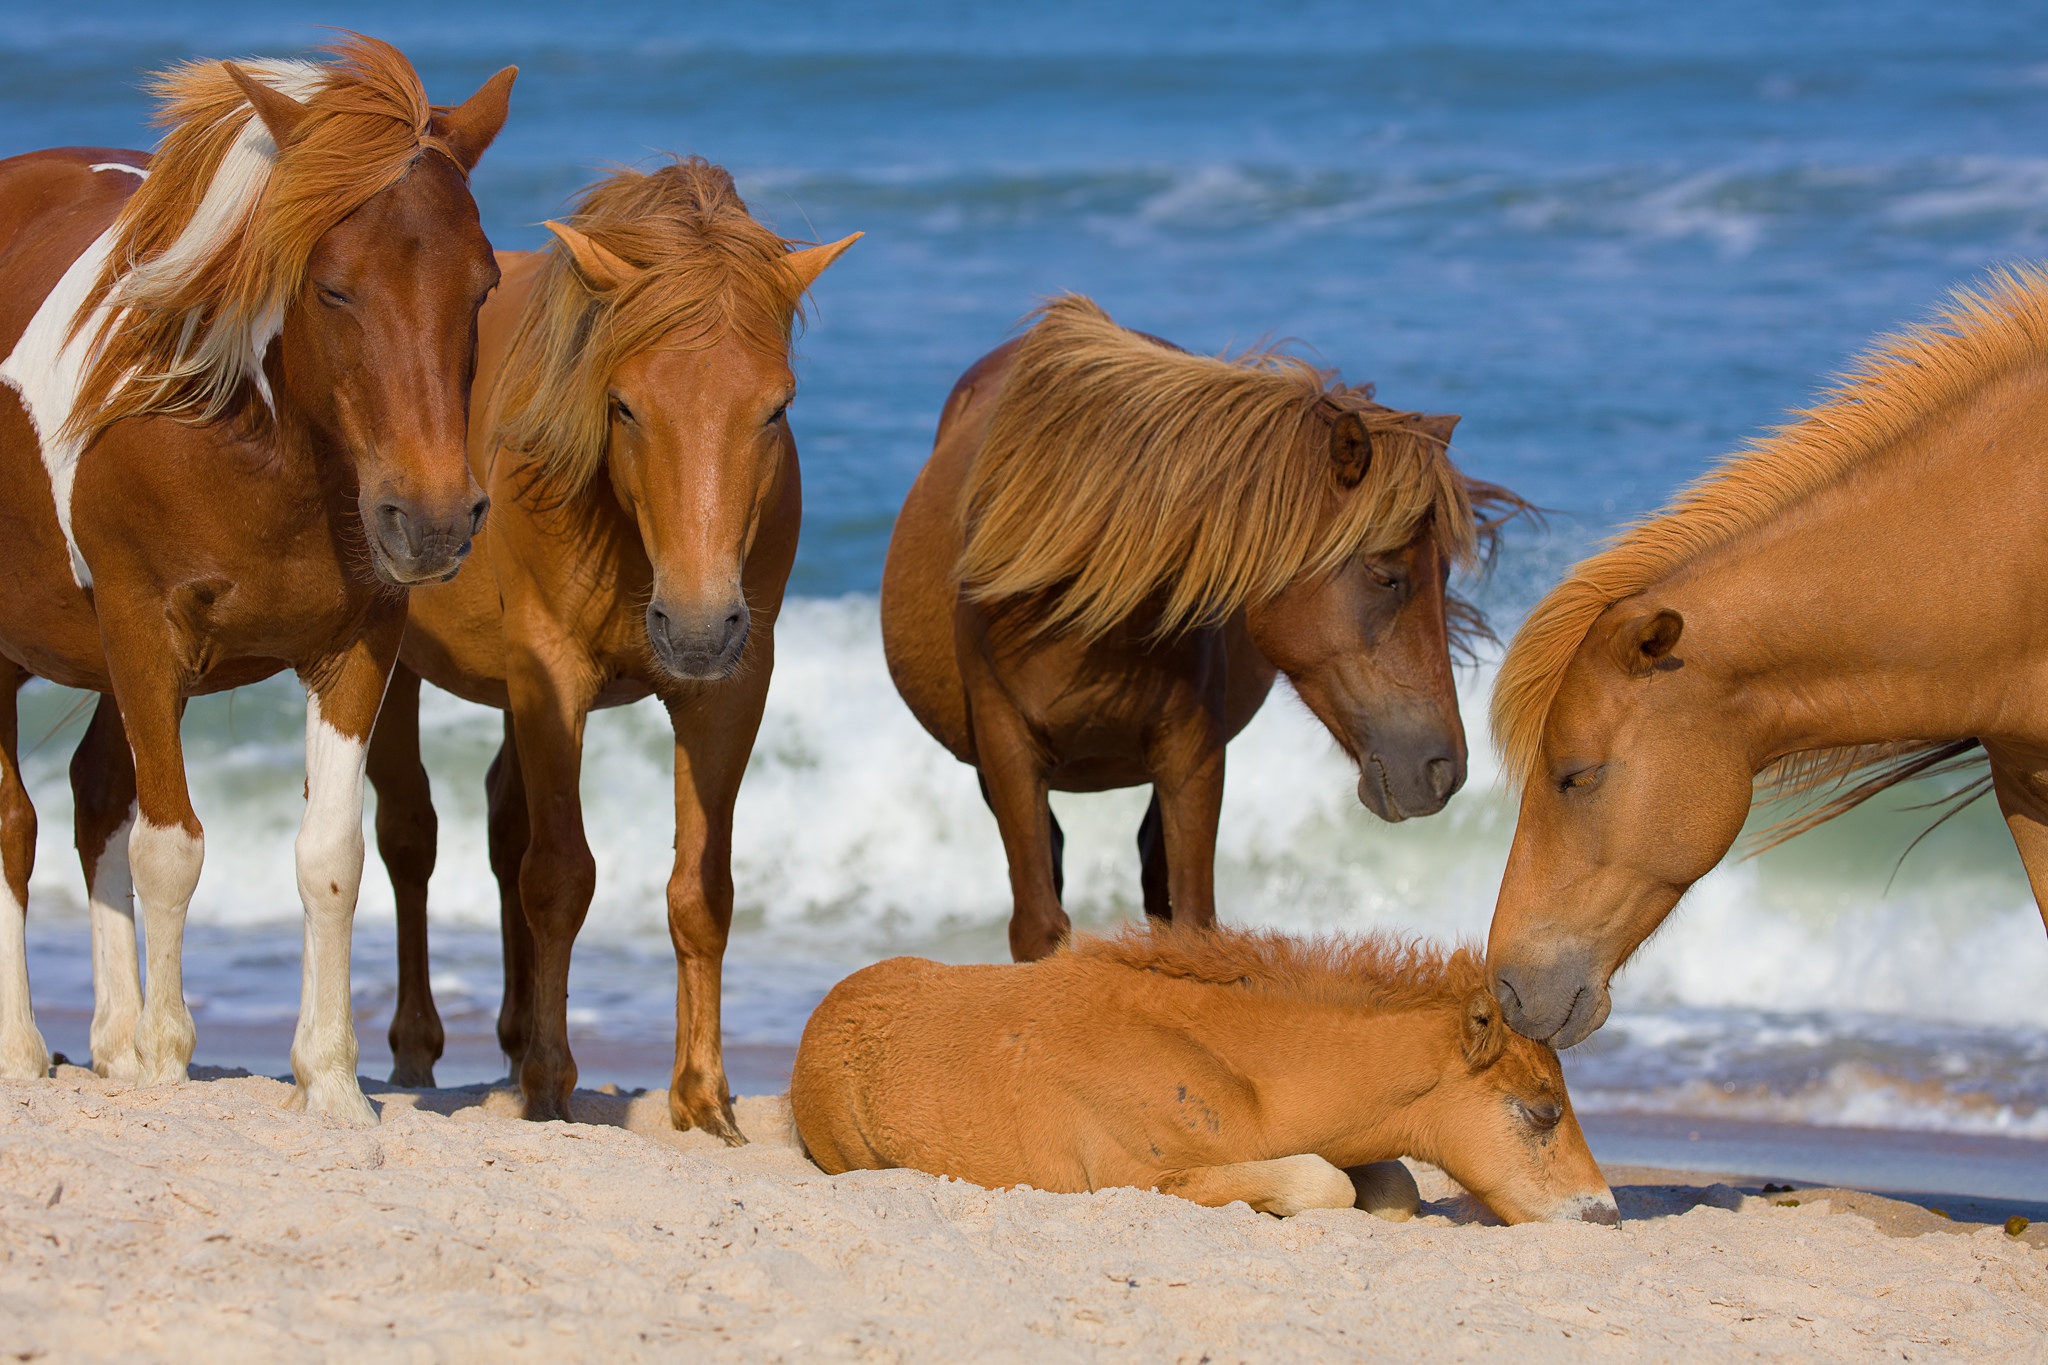 Скачать обои бесплатно Животные, Пляж, Песок, Лошадь, Детеныш Животного картинка на рабочий стол ПК